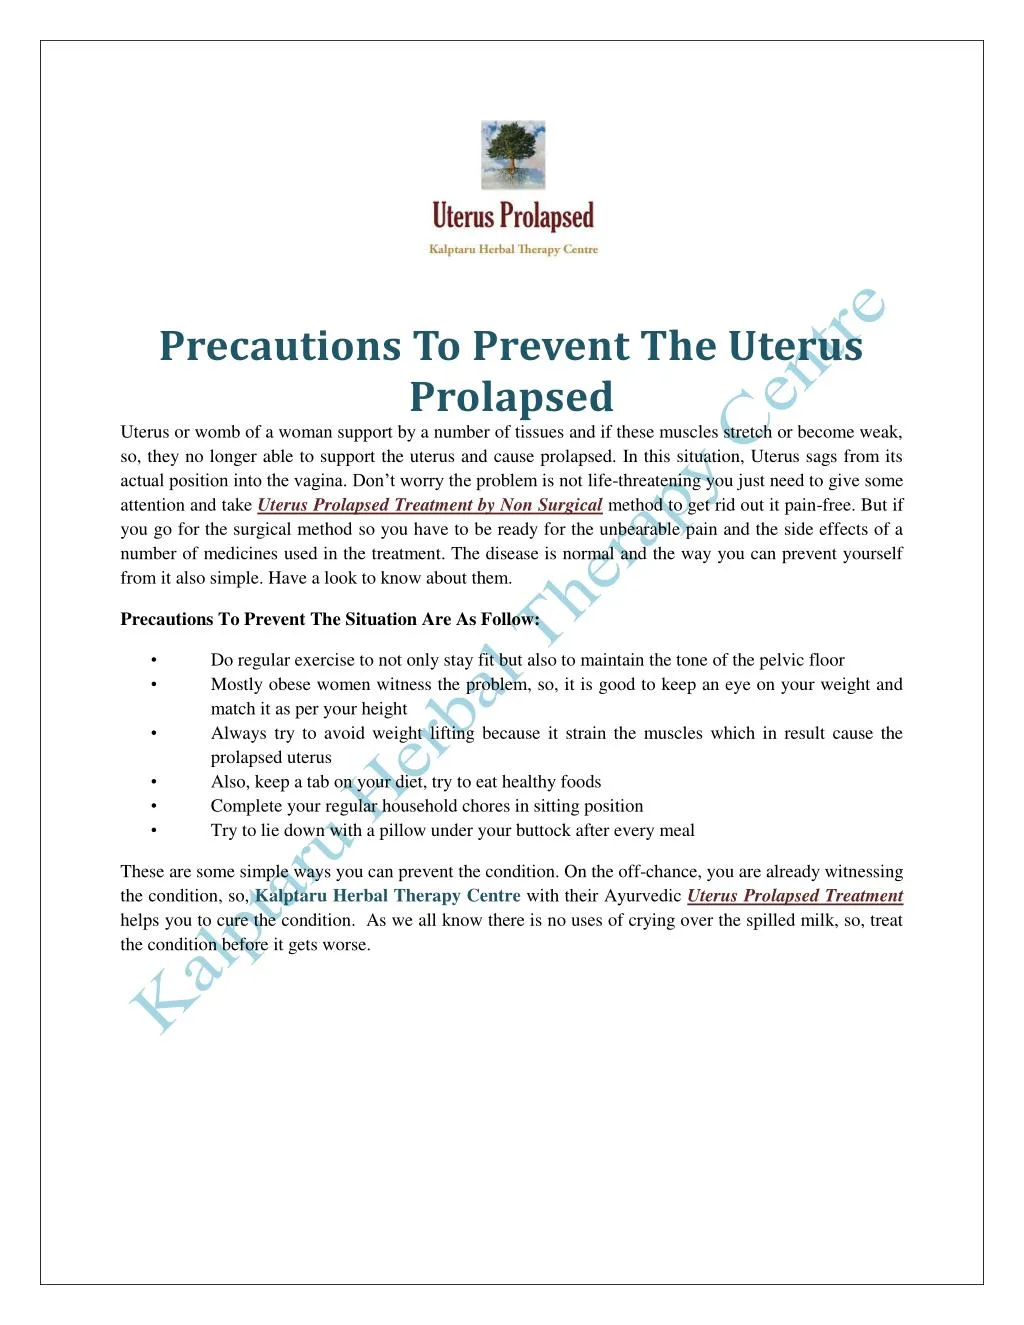 precautions to prevent the uterus prolapsed